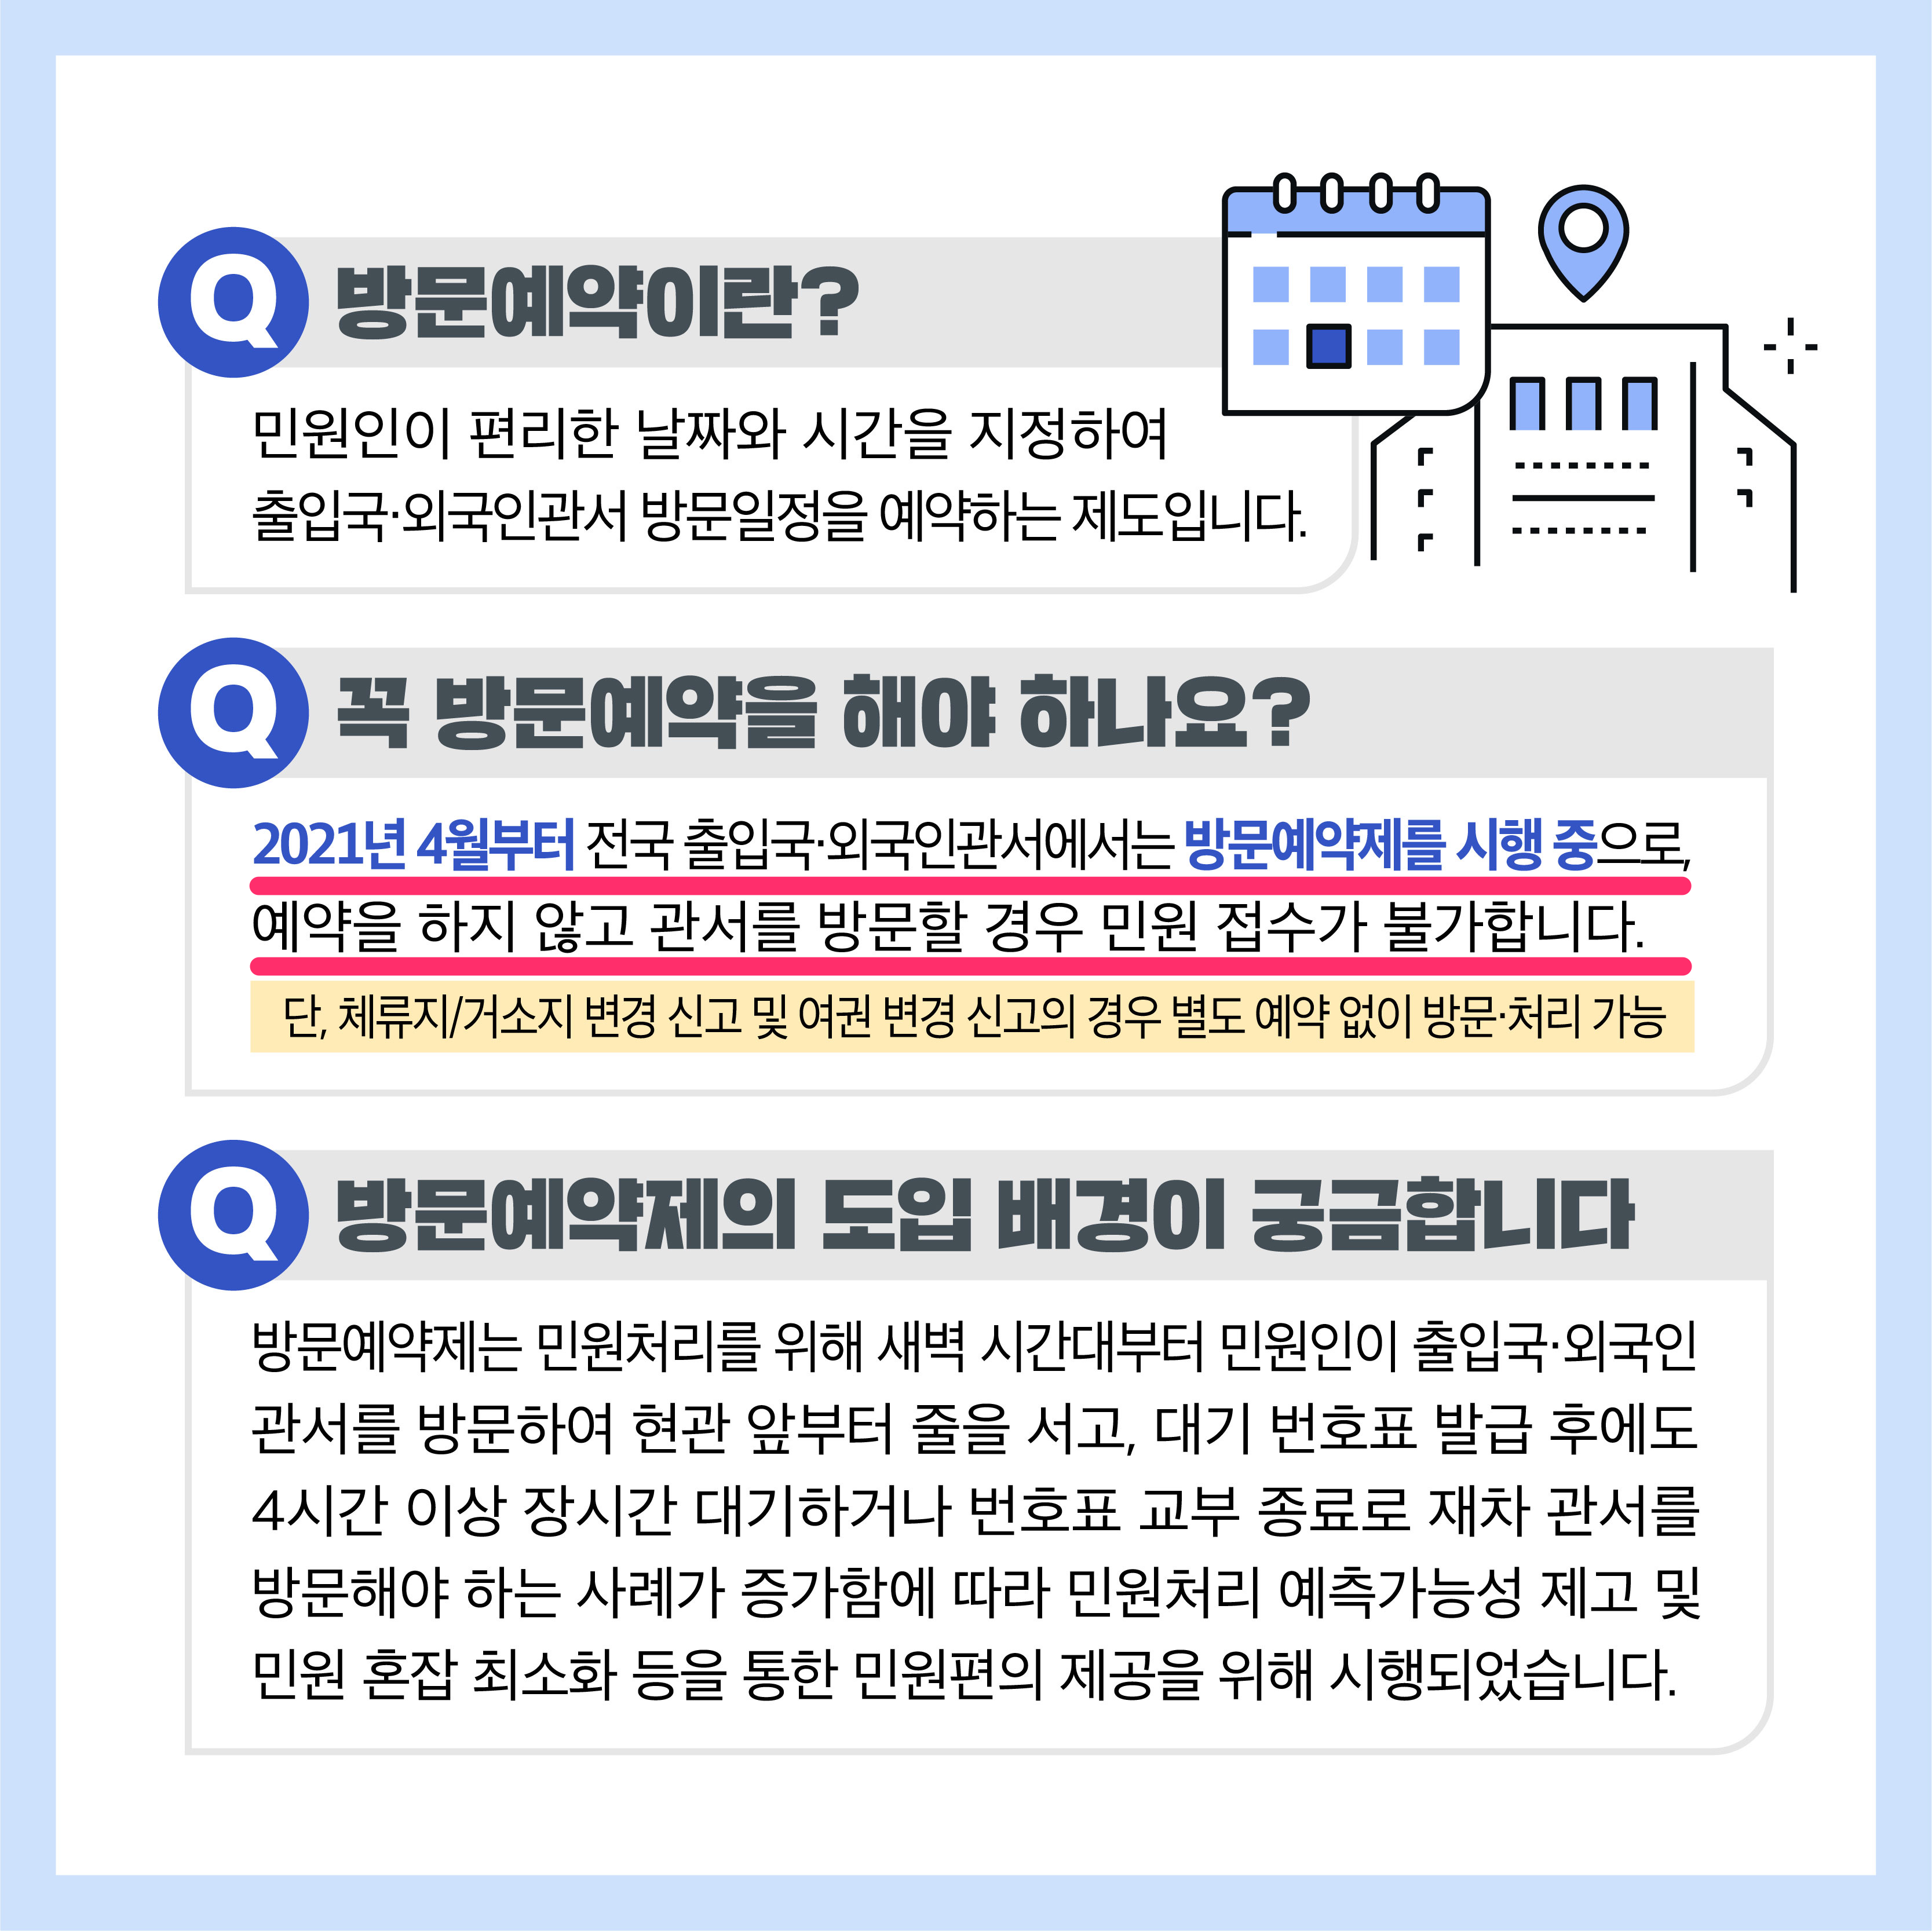 韓国ワーホリで外国人登録証の作成を申請する場所は出入国管理事務所だが、こちらへ訪問をするにはハイコリア（Hi Korea）で事前に予約をする必要がある